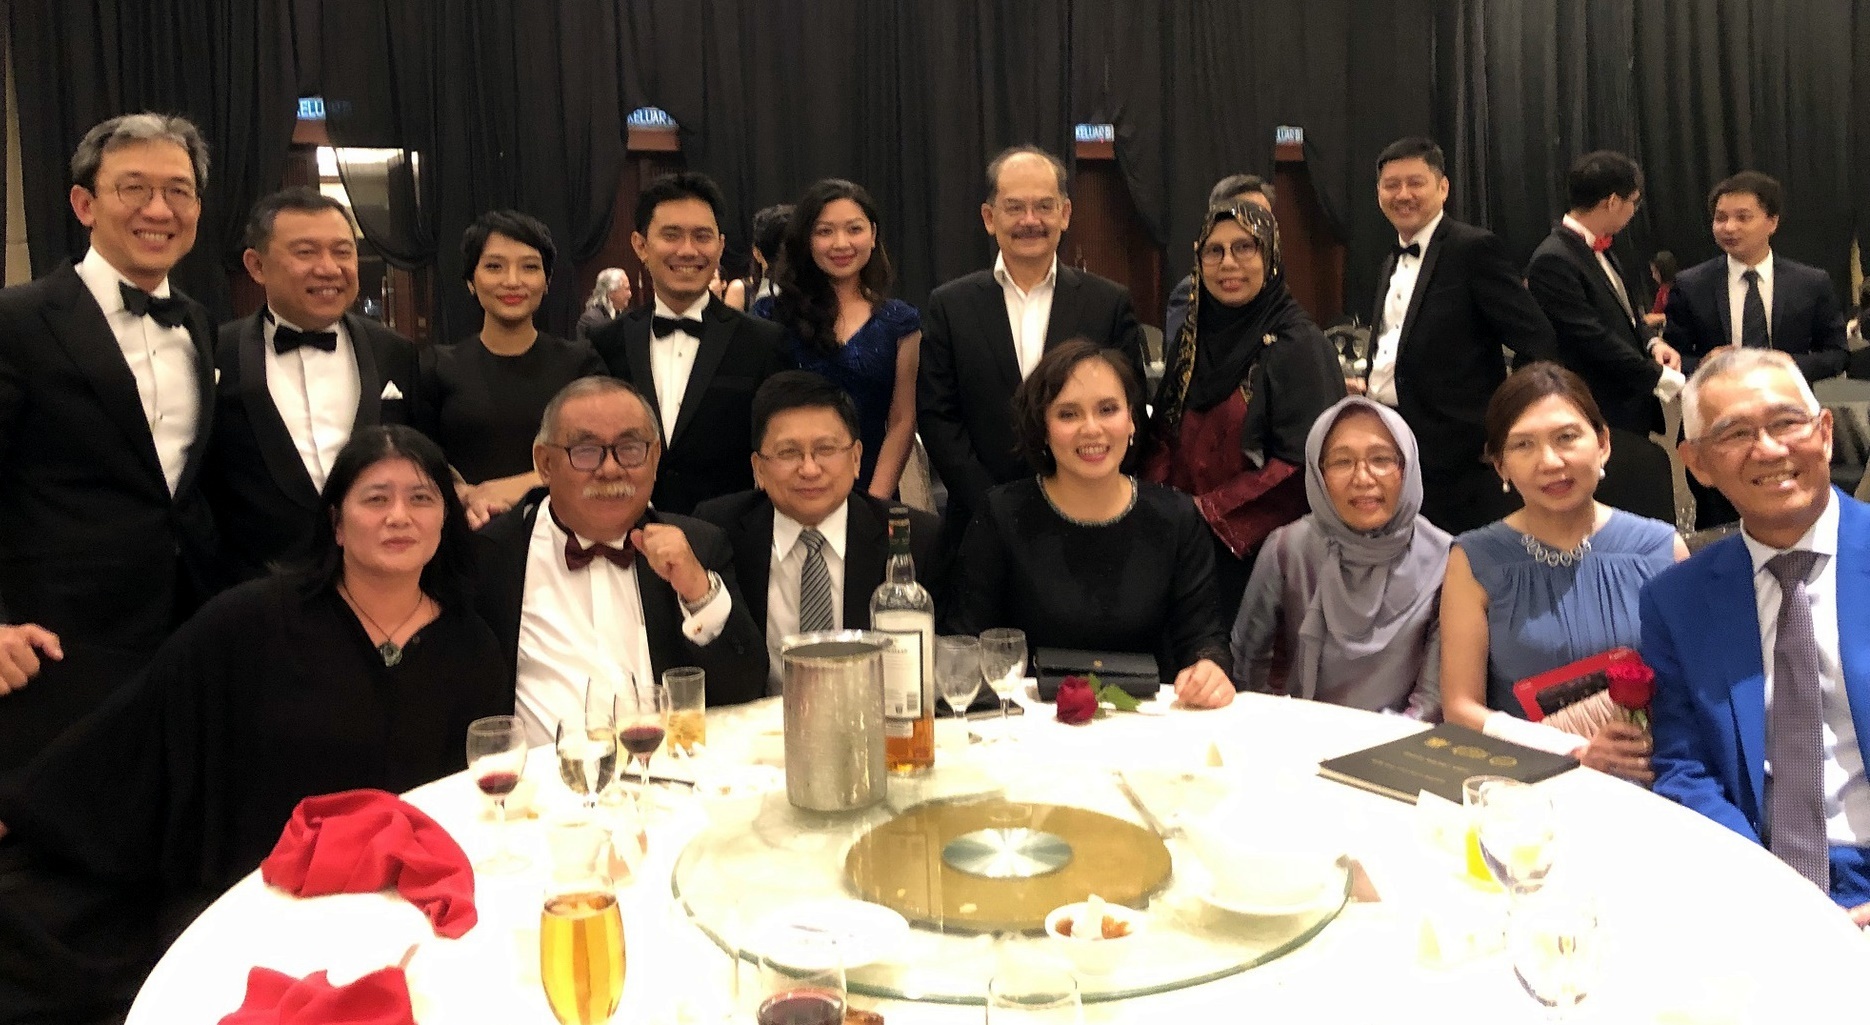 研討會註冊參與之法律專業人士超過350人，司法年度開幕晚宴則超過50桌之盛況。照片前排左起：謝若蘭教授（左一）、退休法官（第一位沙巴籍的沙巴與沙勞越大法官）Datuk Douglas Cristo Primus Sikayun（左二）、馬來西亞聯邦法院的首席大法官 Richard Malanjum（左三）、沙巴與沙勞越大法官 David Wong Dak Wah（右一）